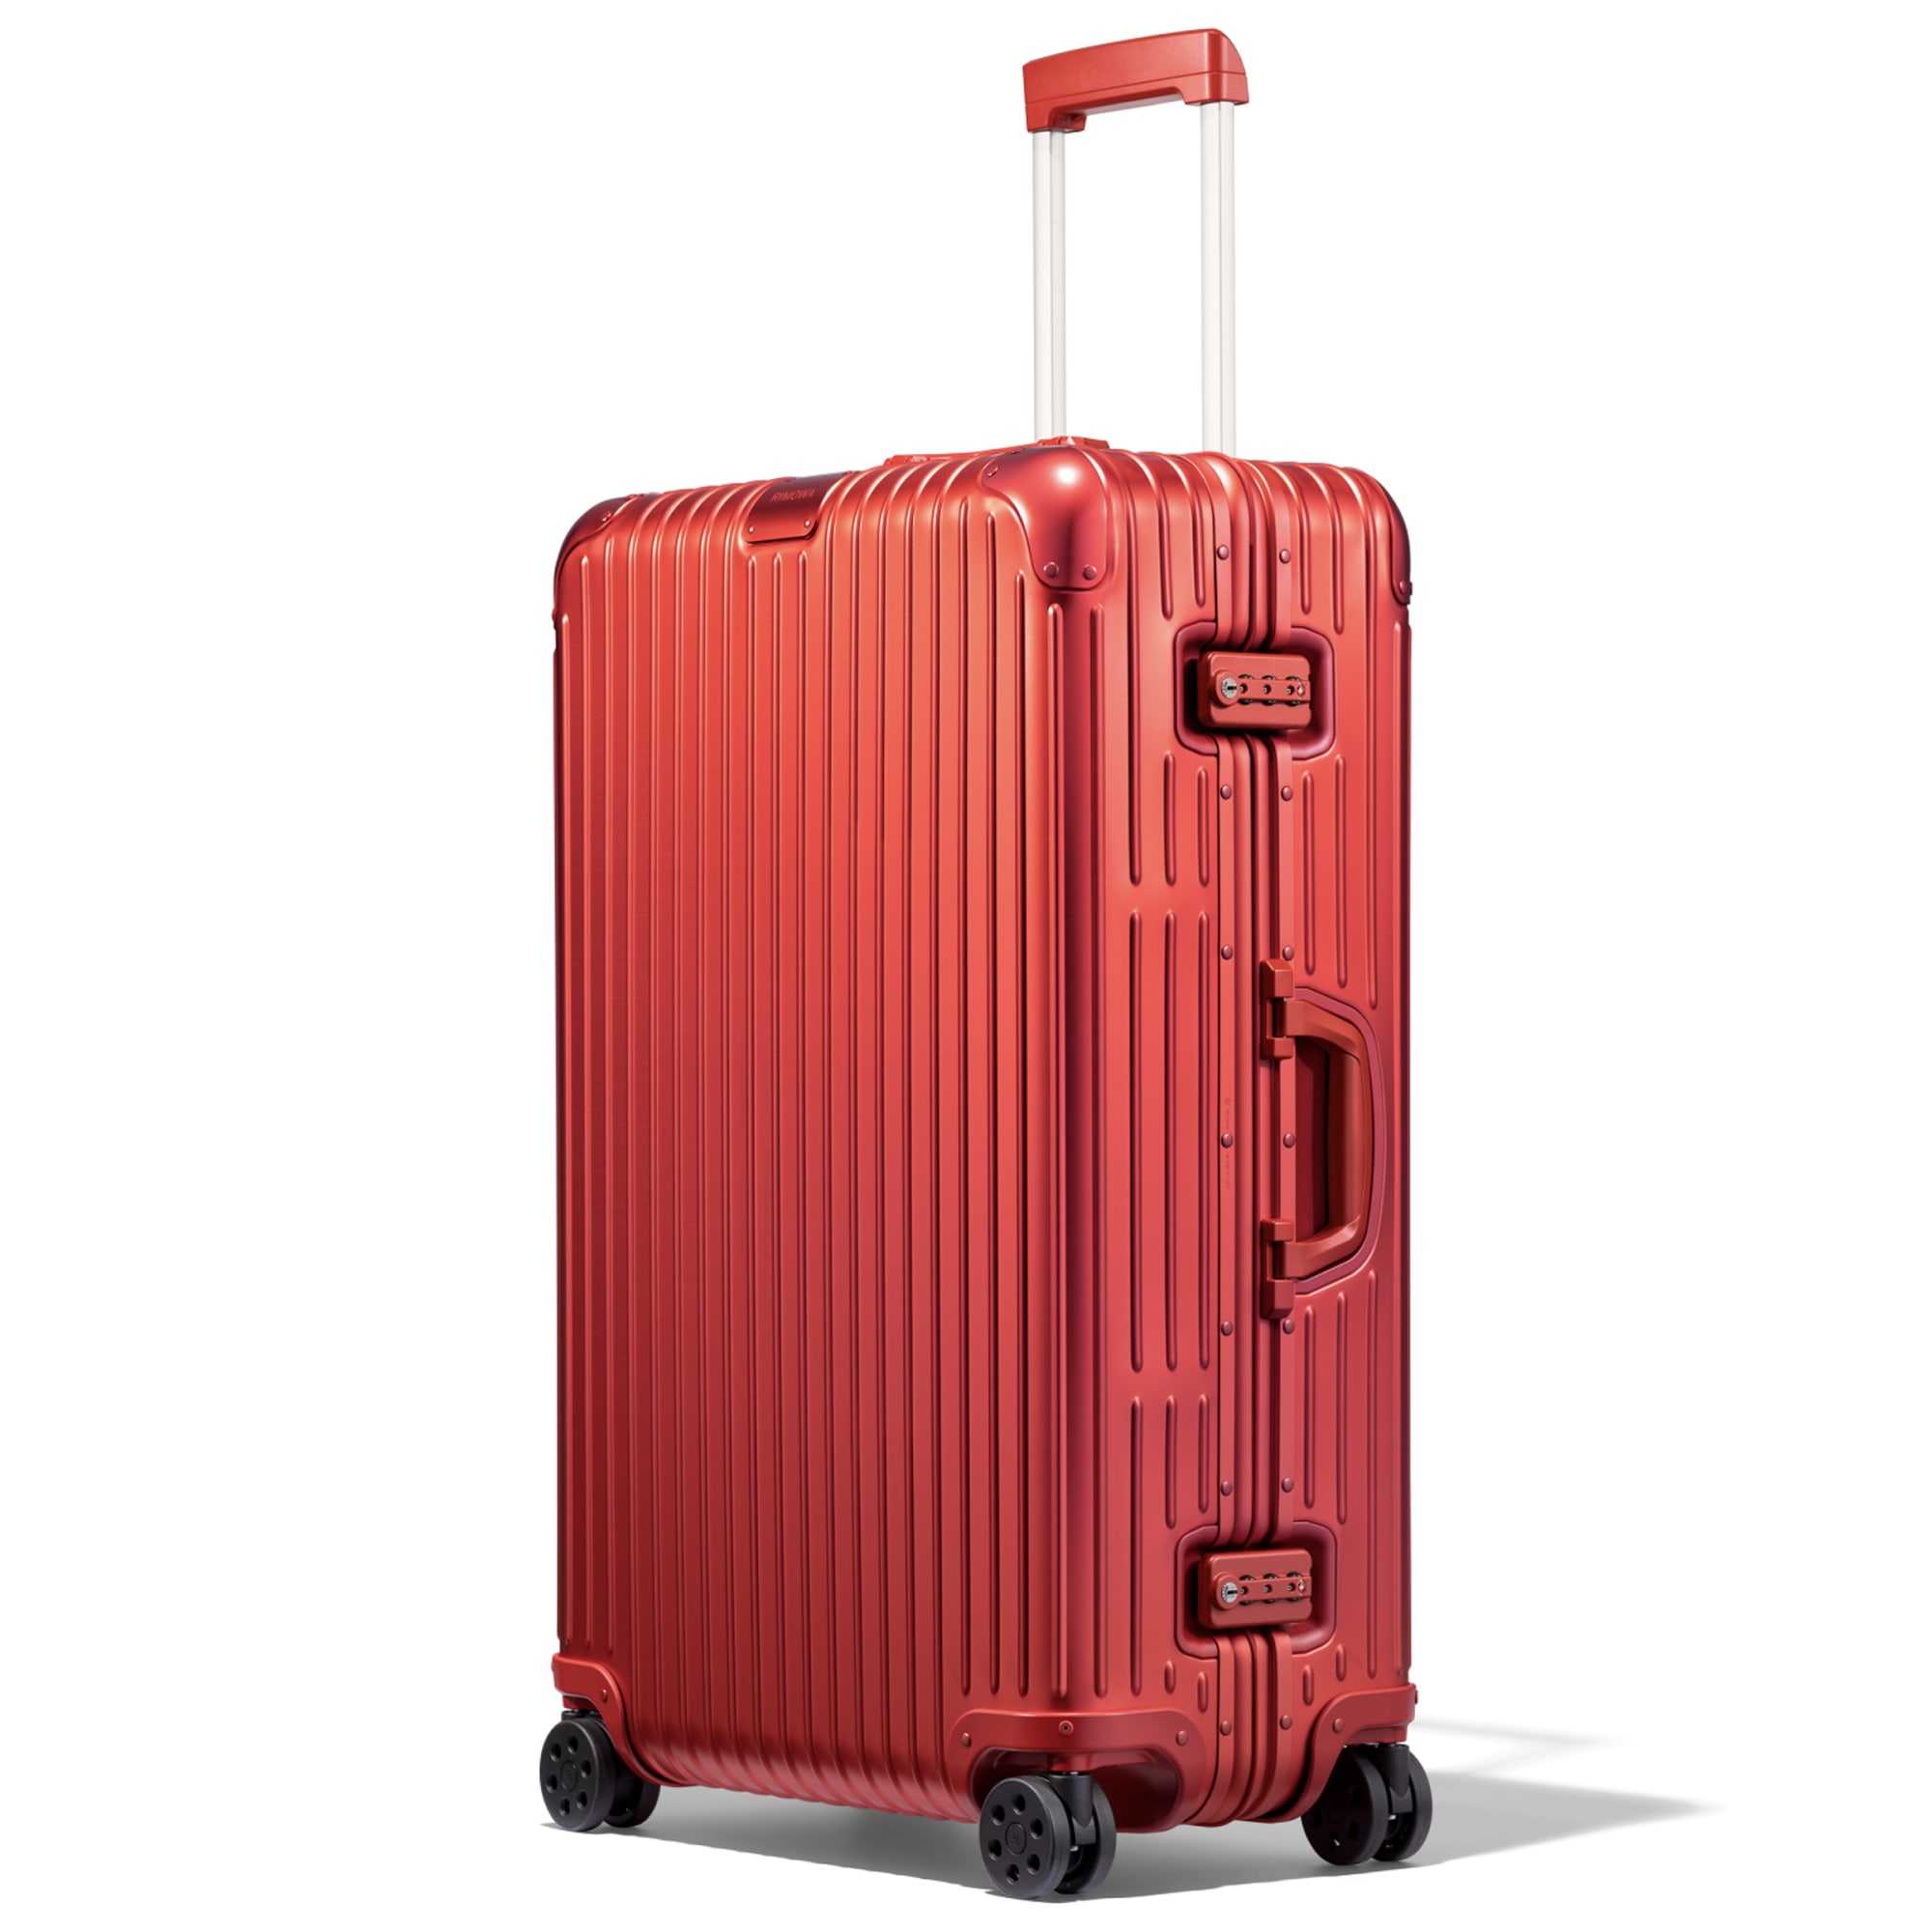 「リモワ」のアルミニウム合金製スーツケースに地中海やトキに 